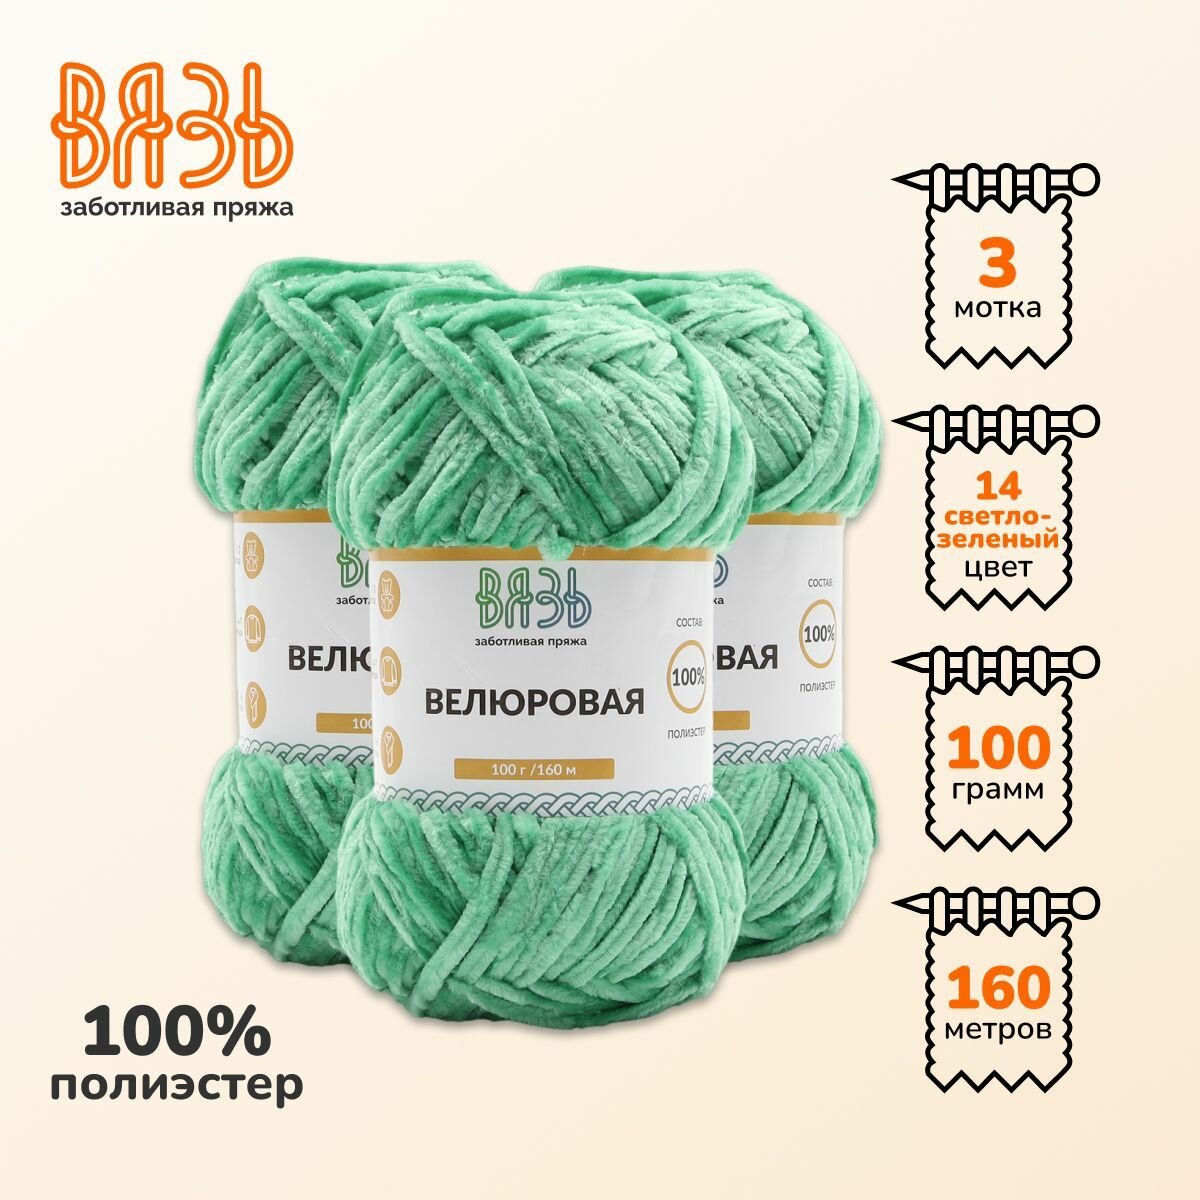 Пряжа для вязания Вязь 'Велюровая' 100г, 160м (100% полиэстер) (14 светло-зеленый), 3 мотка